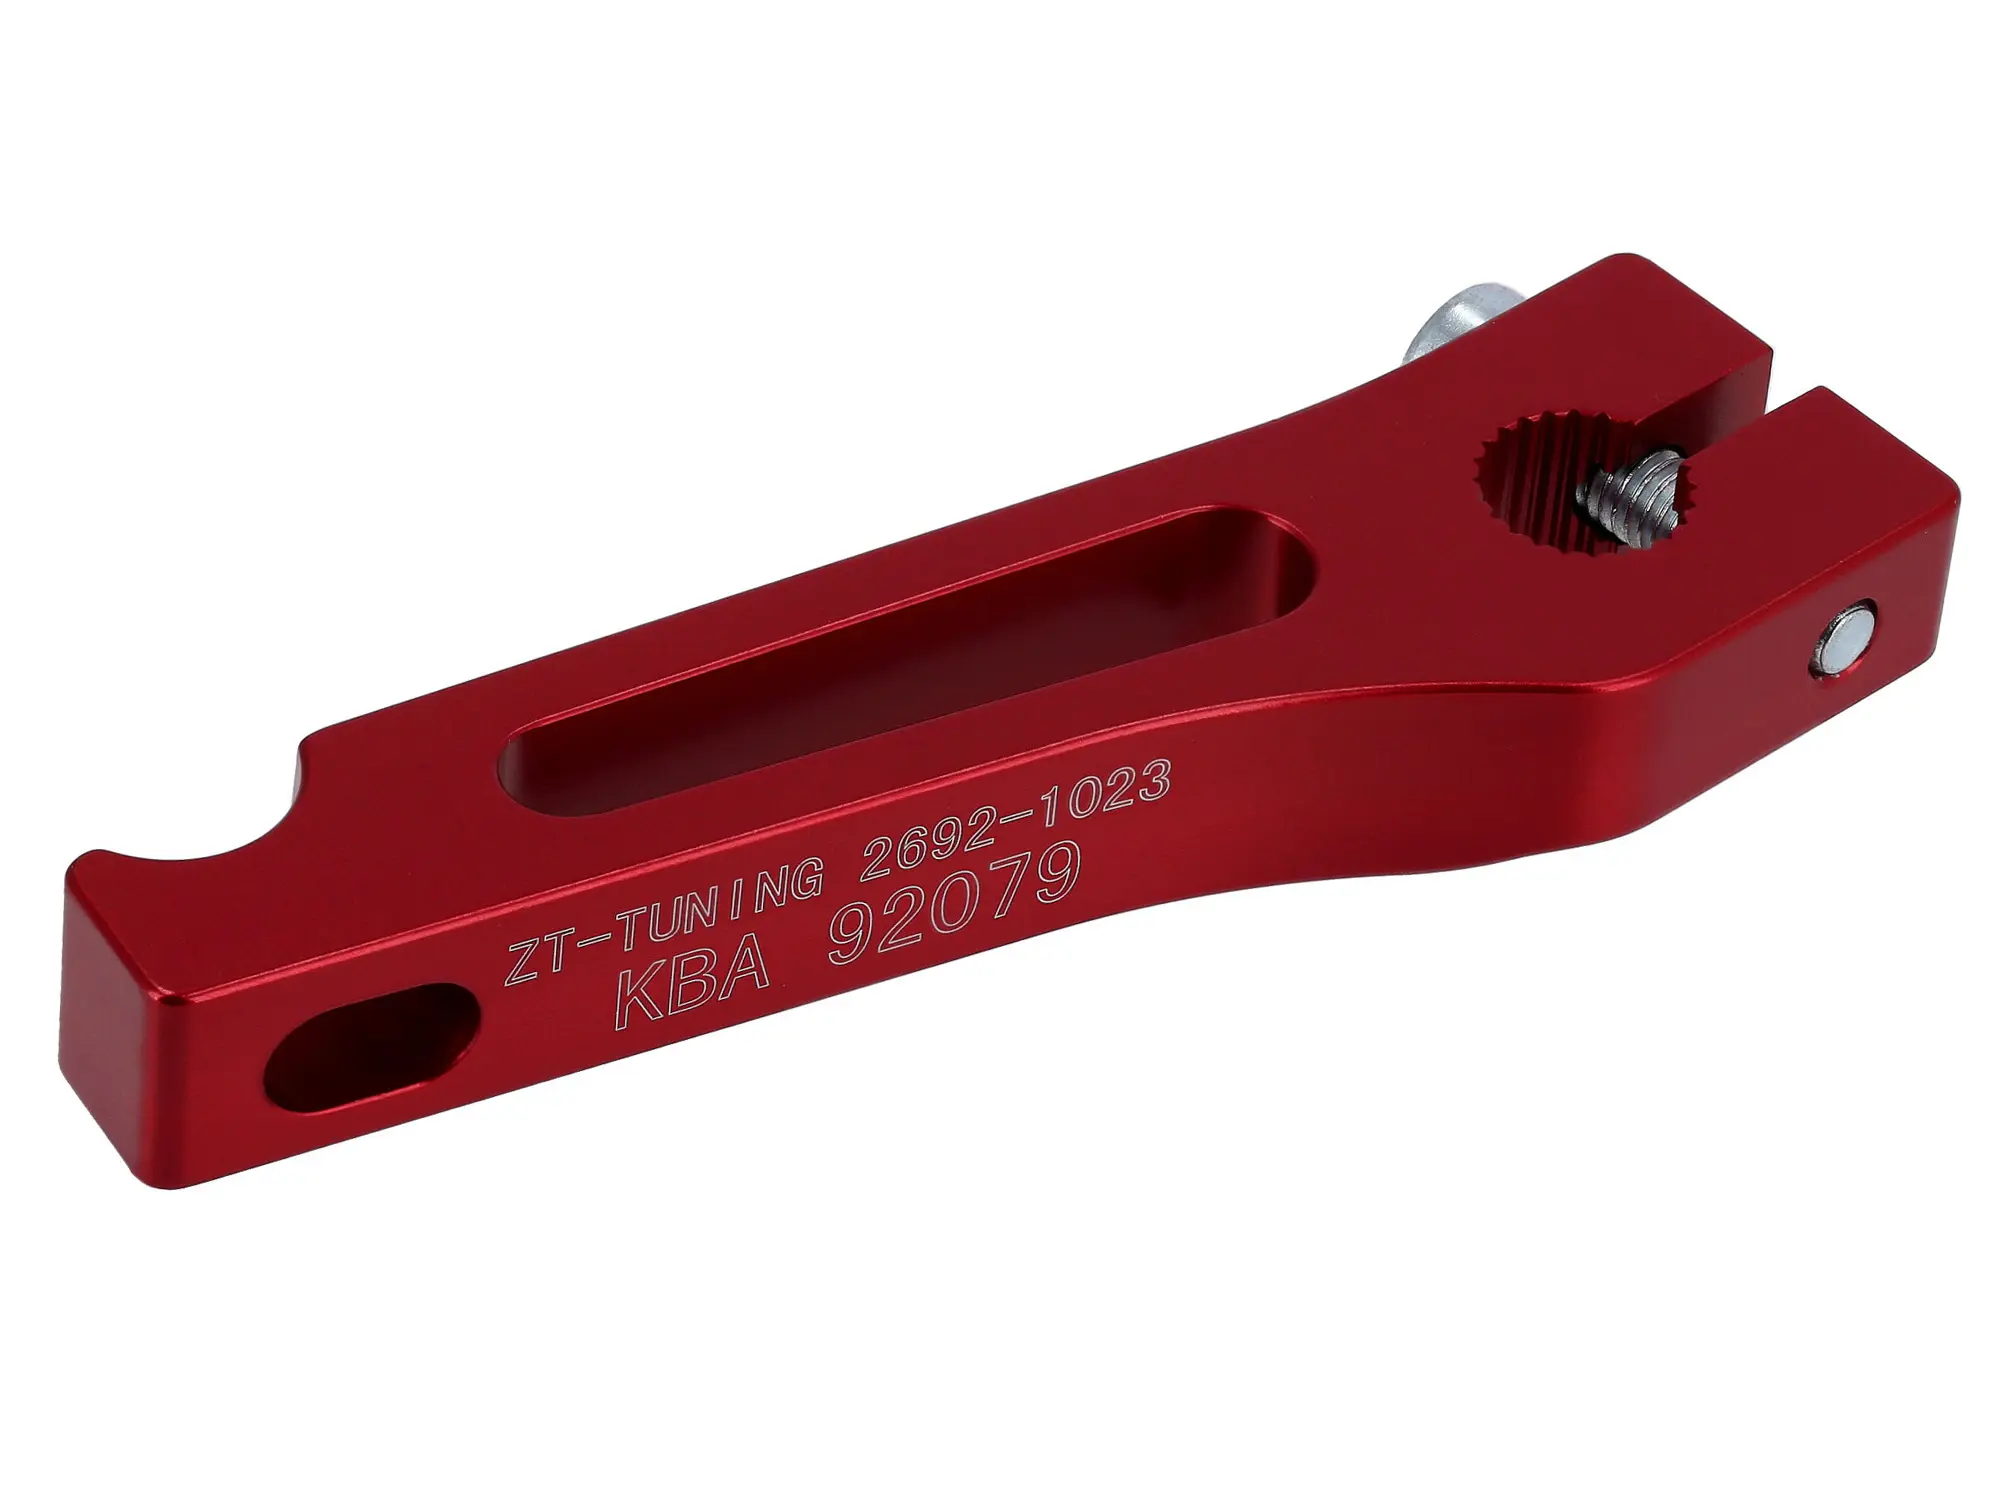 ZT-Tuning CNC Bremshebel hinten mit ABE, Rot - für S50, S51, S70, KR51/1,  KR51/2, SR50, SR80, SR4-1, SR4-2, SR4-3, SR4-4 von ZT-Tuning